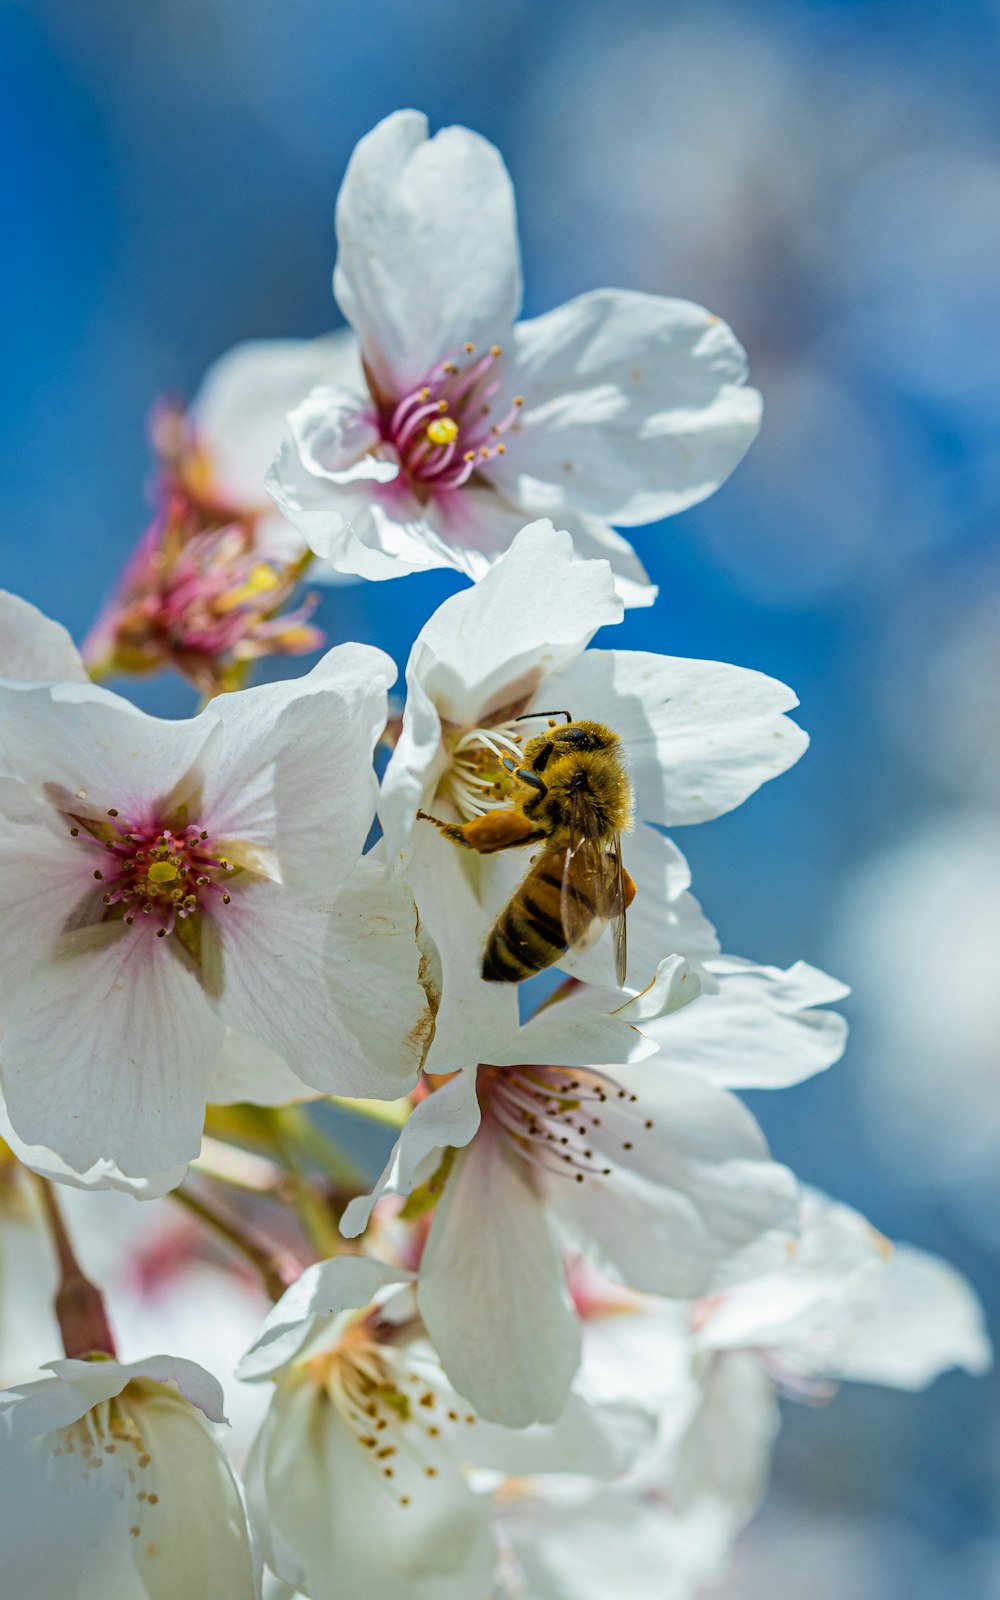 abeille perchée sur la fleur de cerisier blanc en gros plan photographie pendant la journée